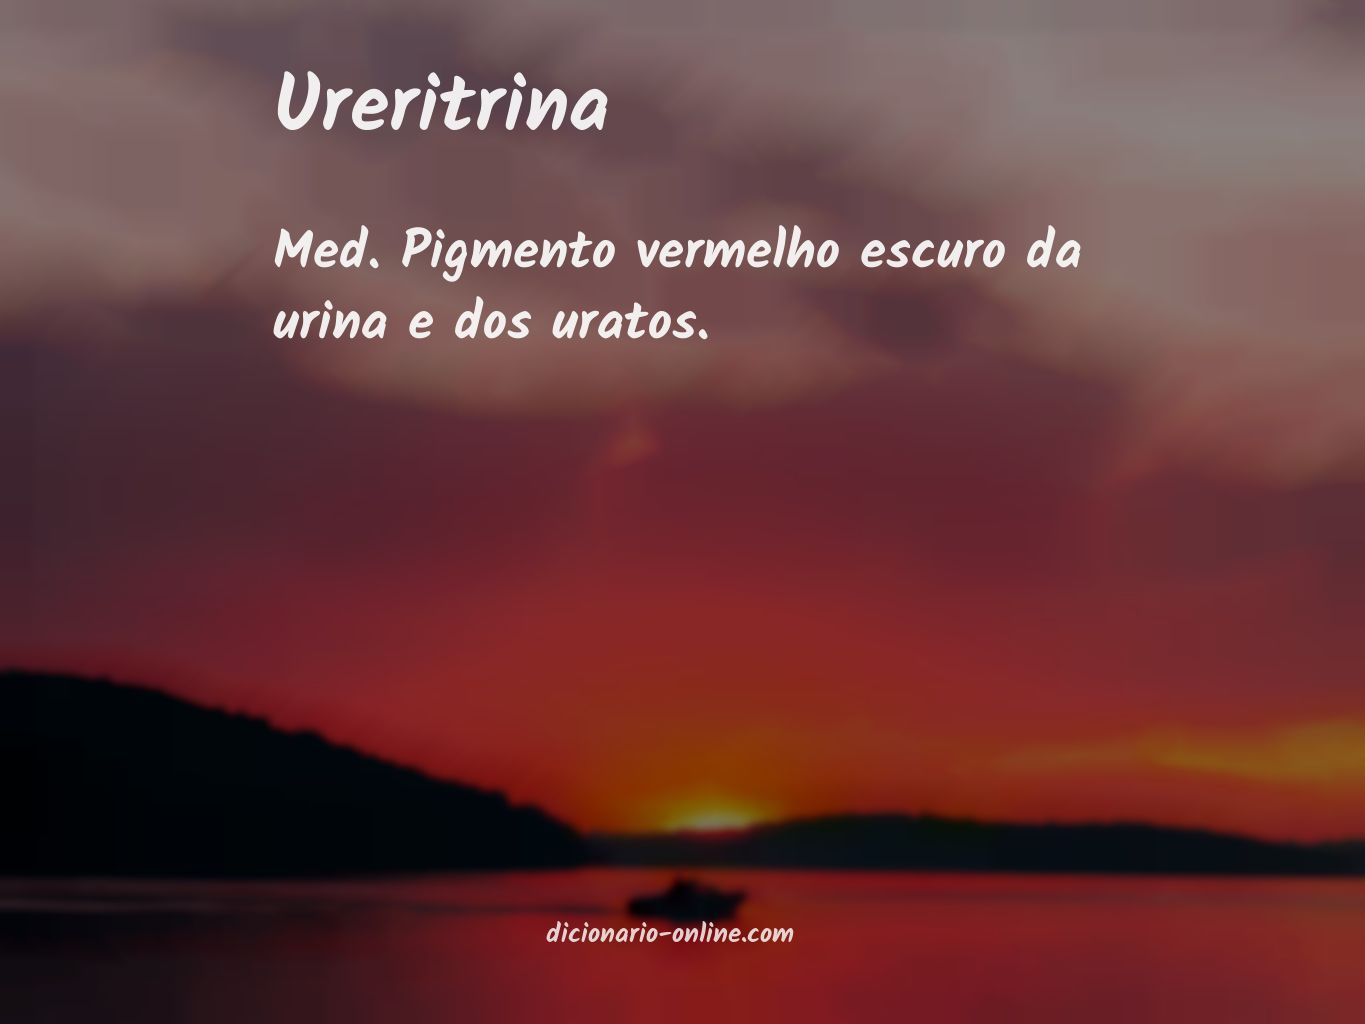 Significado de ureritrina